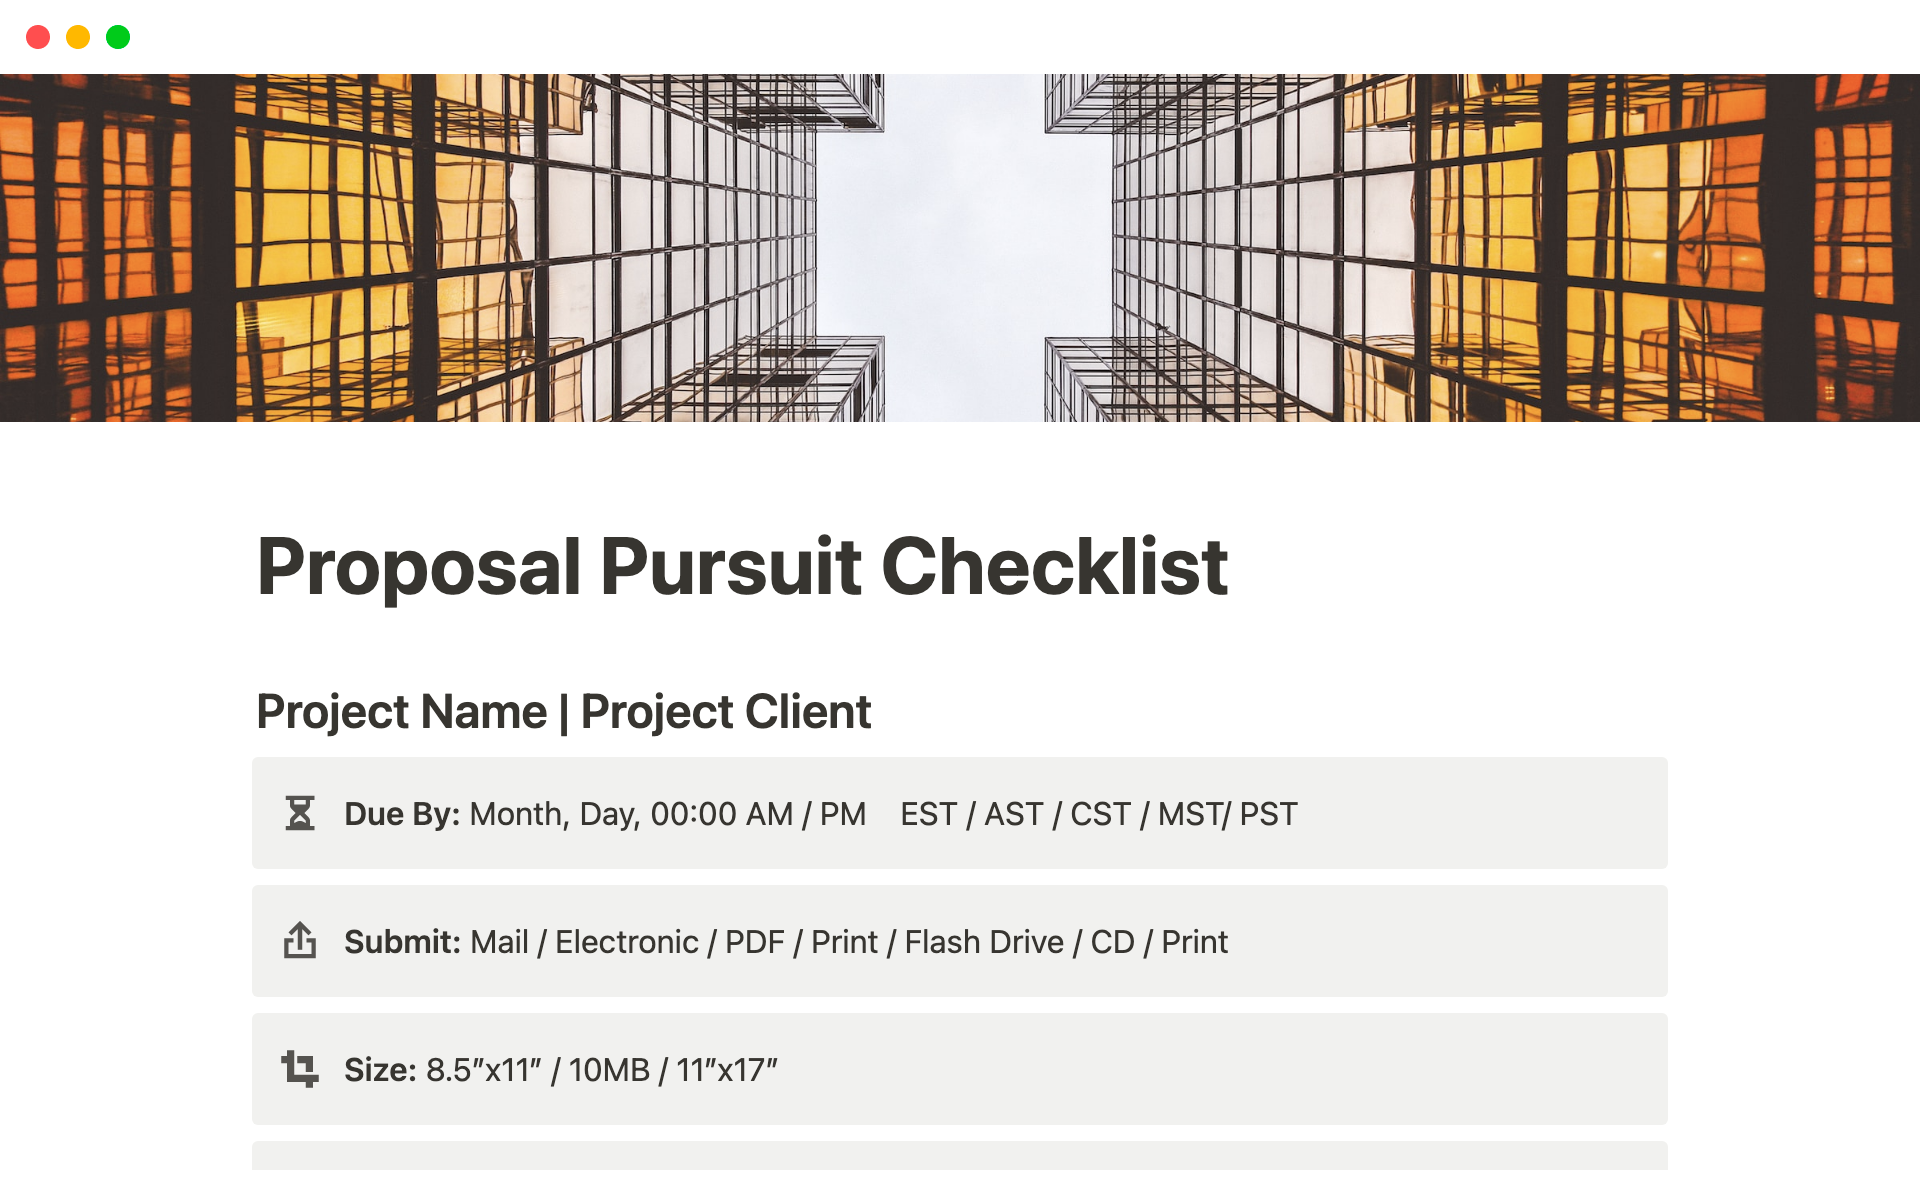 Vista previa de una plantilla para Proposal Pursuit Checklist